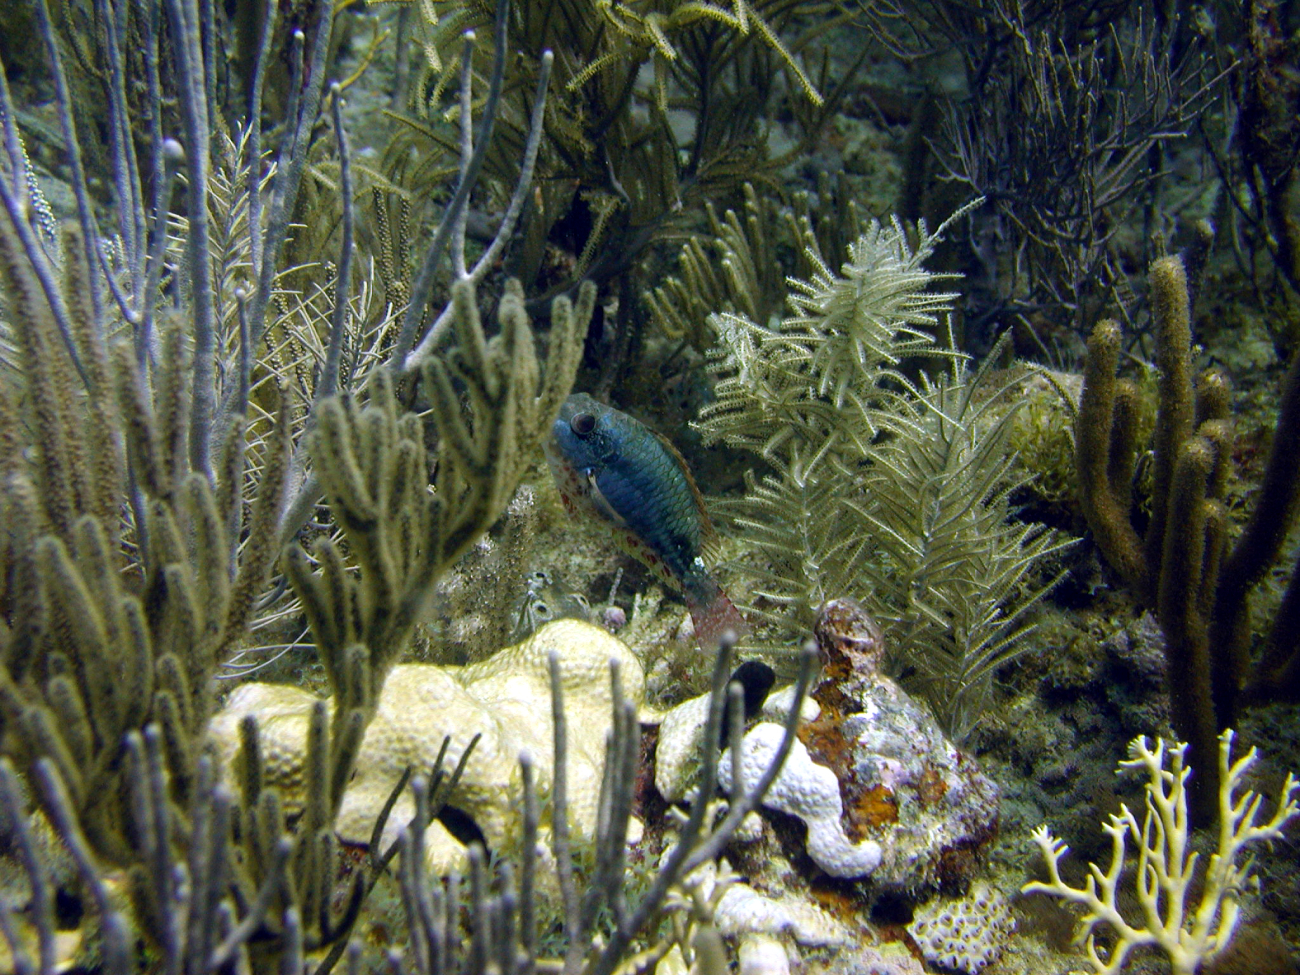 Redband parrotfish (Sparisoma aurofrenatum)